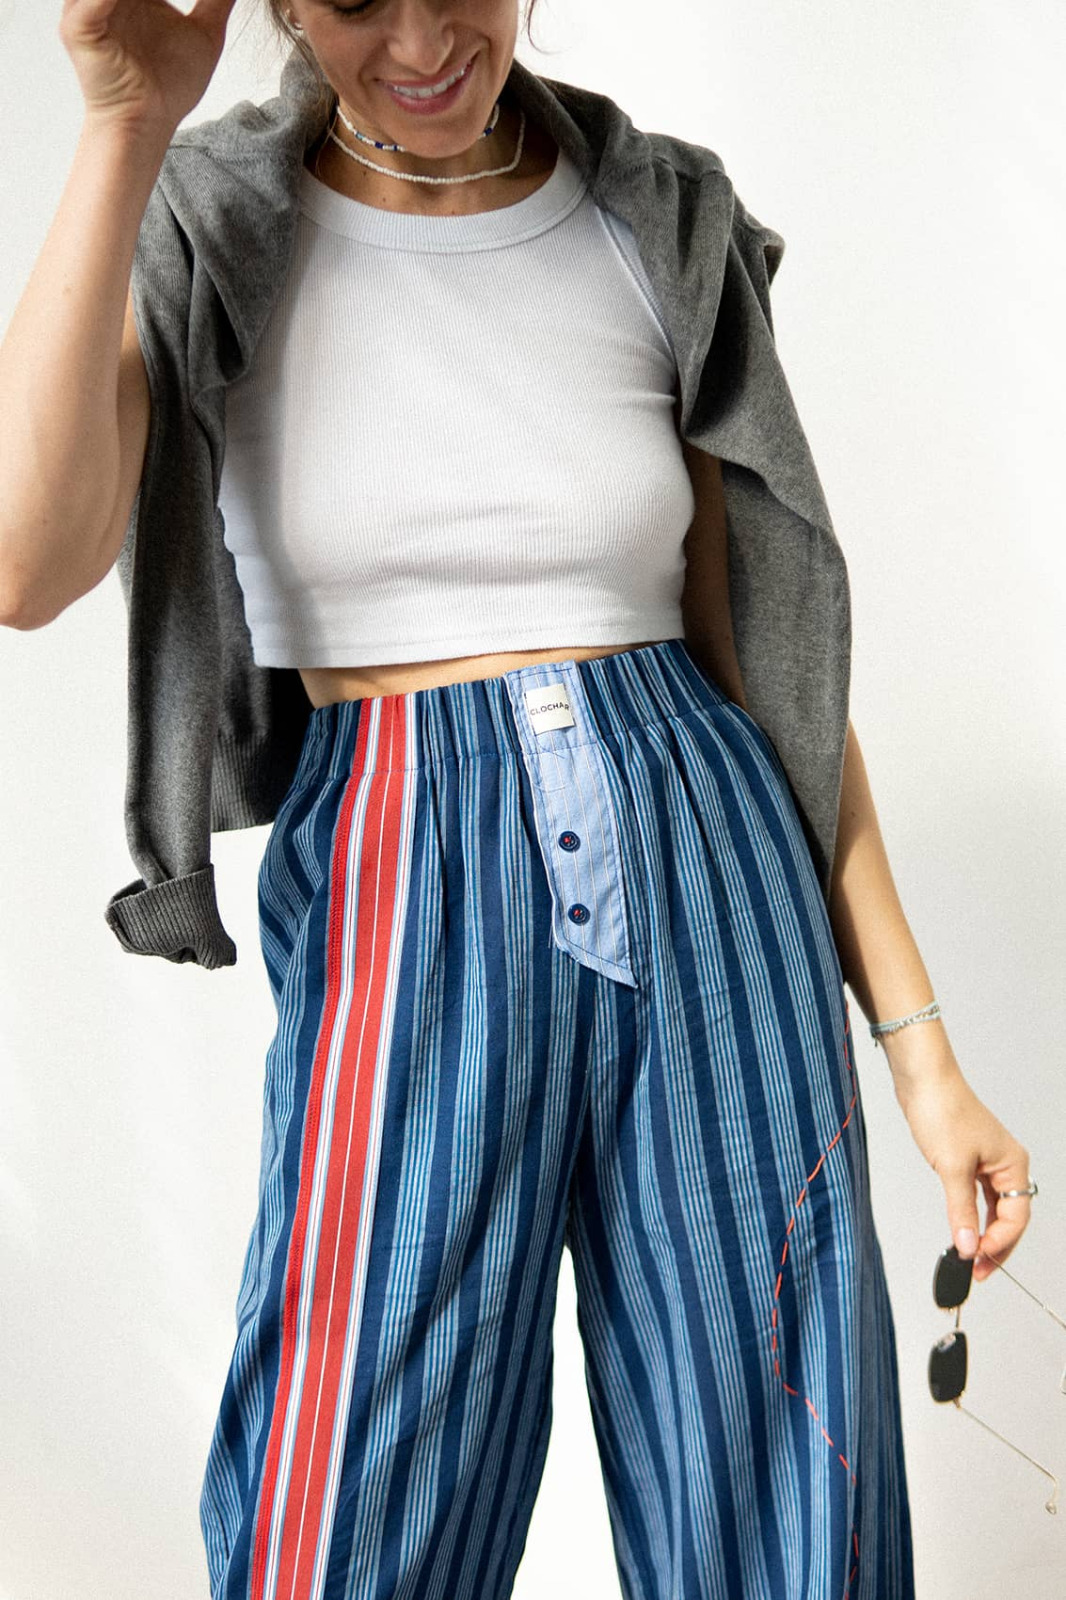 Штаны для дома и отдыха в пижамном стиле из натурального хлопка в полоску вмагазине «CLOCHAR» на Ламбада-маркете